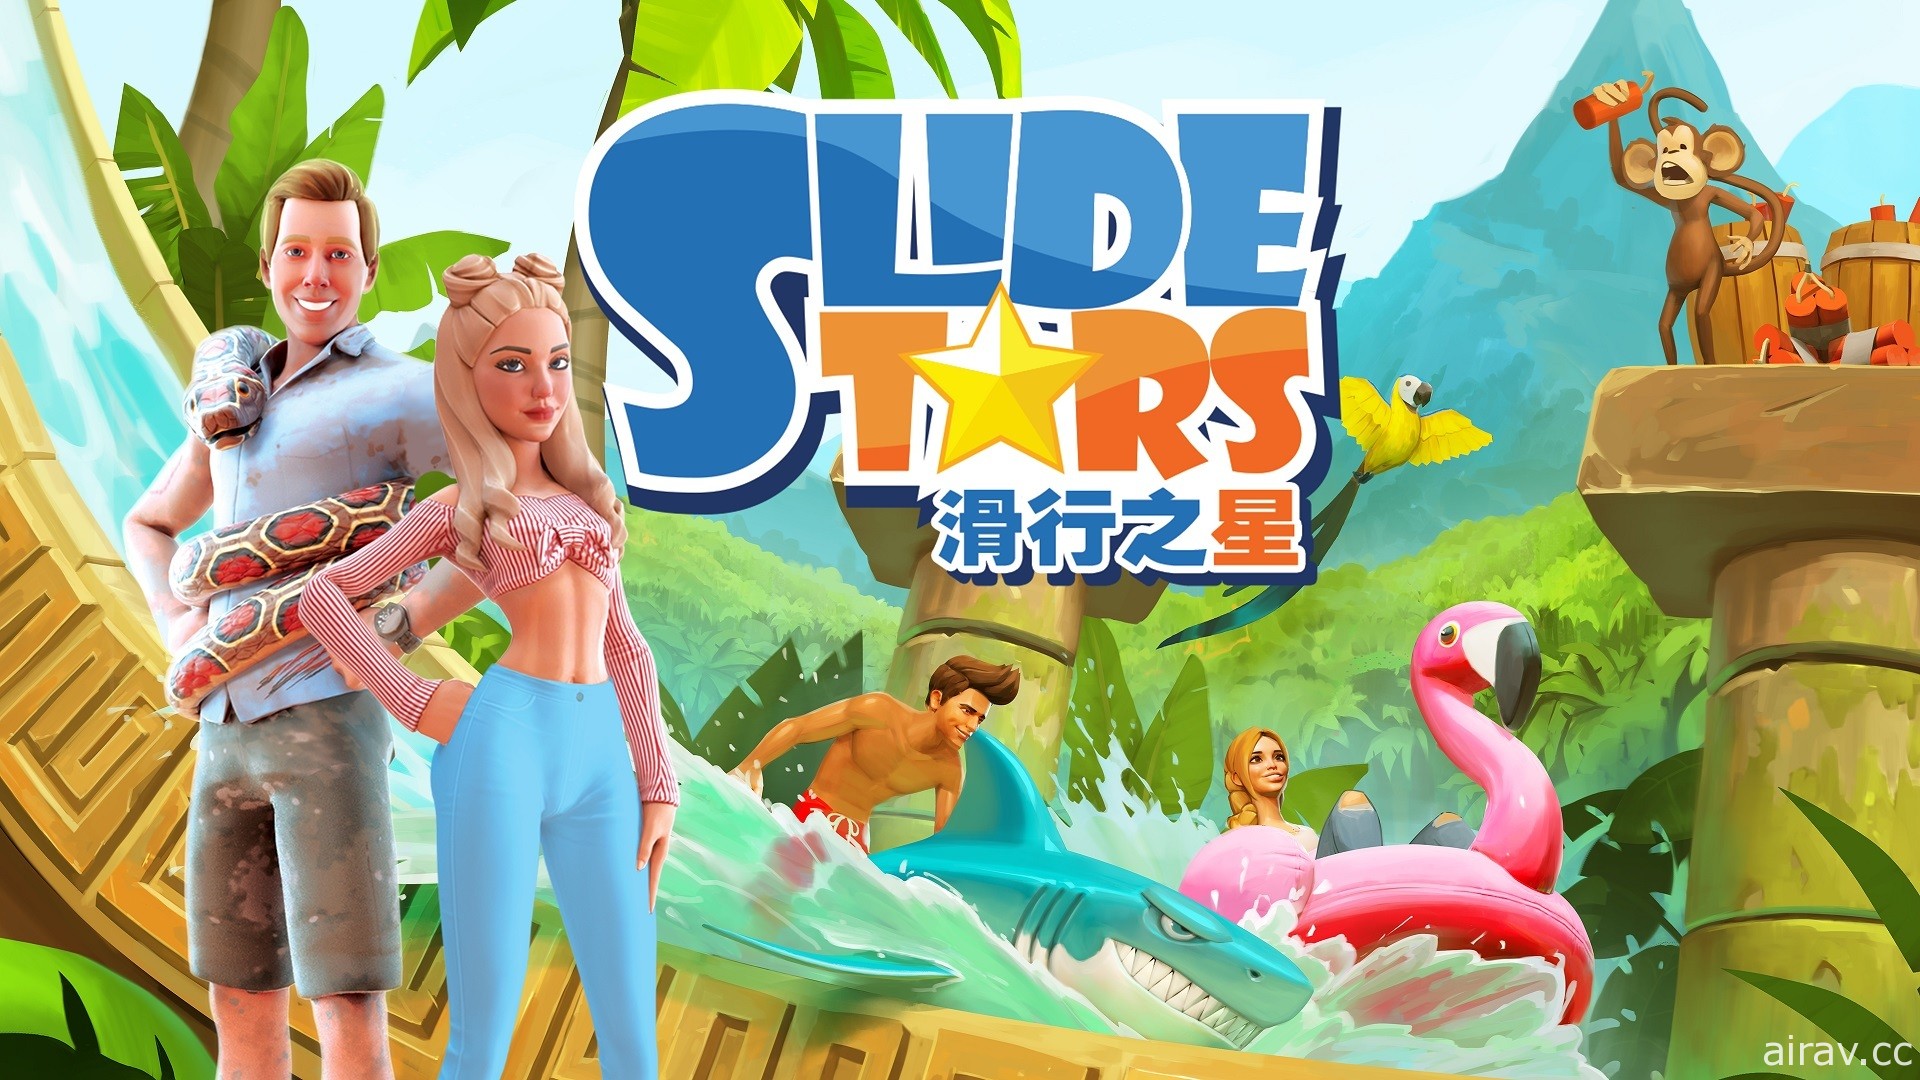 《滑行之星 Slide Stars》現已登陸 PS4 及 Switch 亞洲區商店